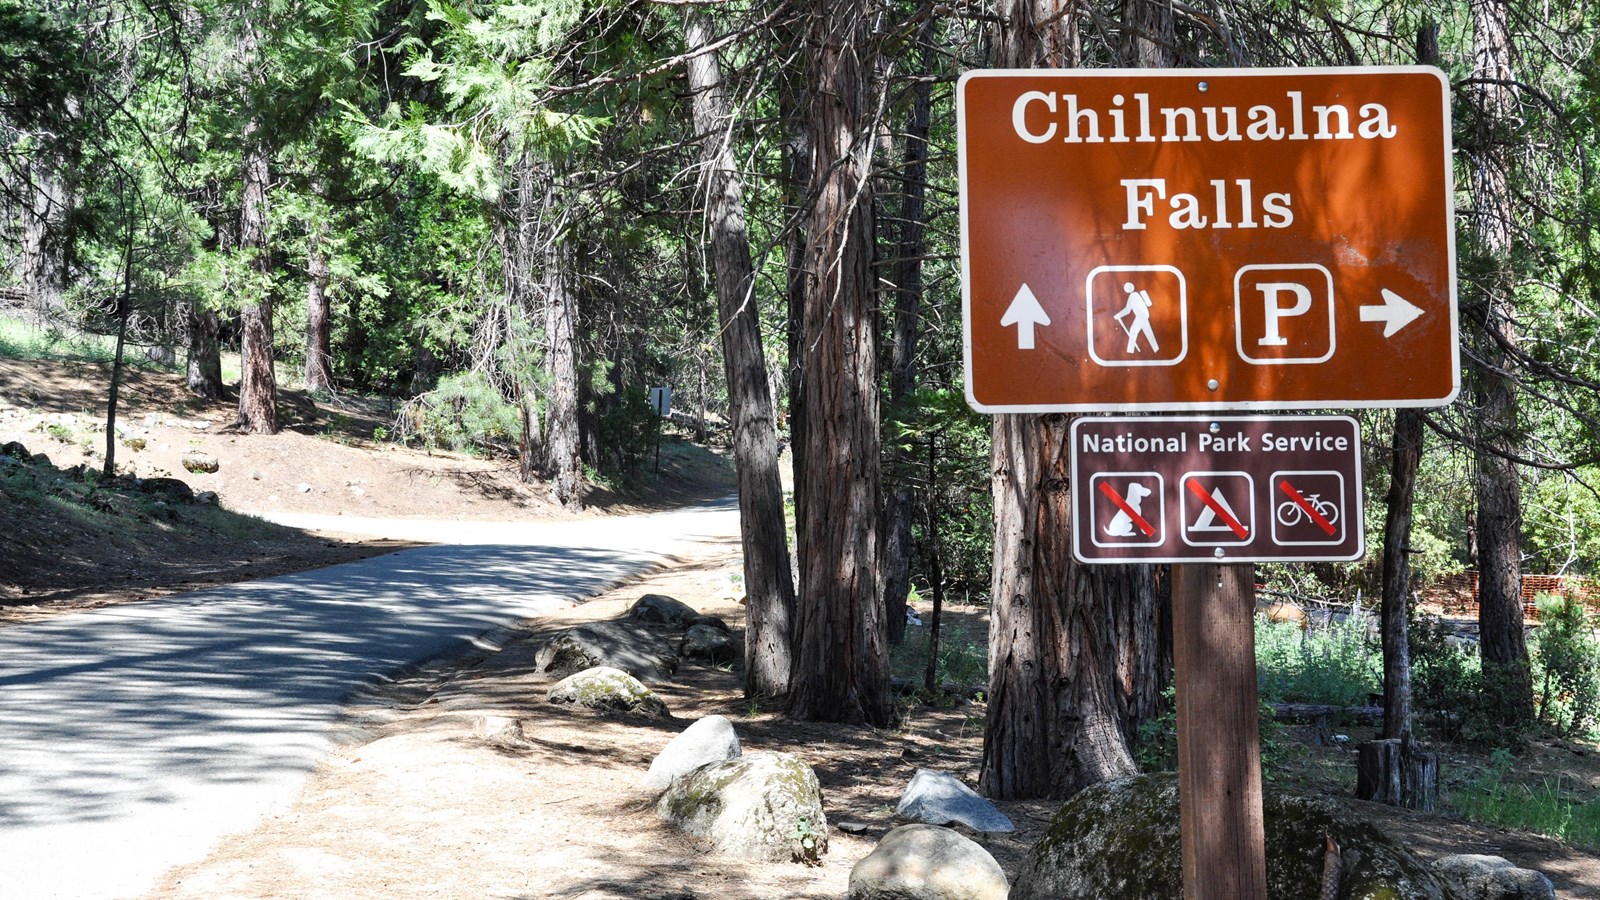 Chilnualna Falls Trailhead sign